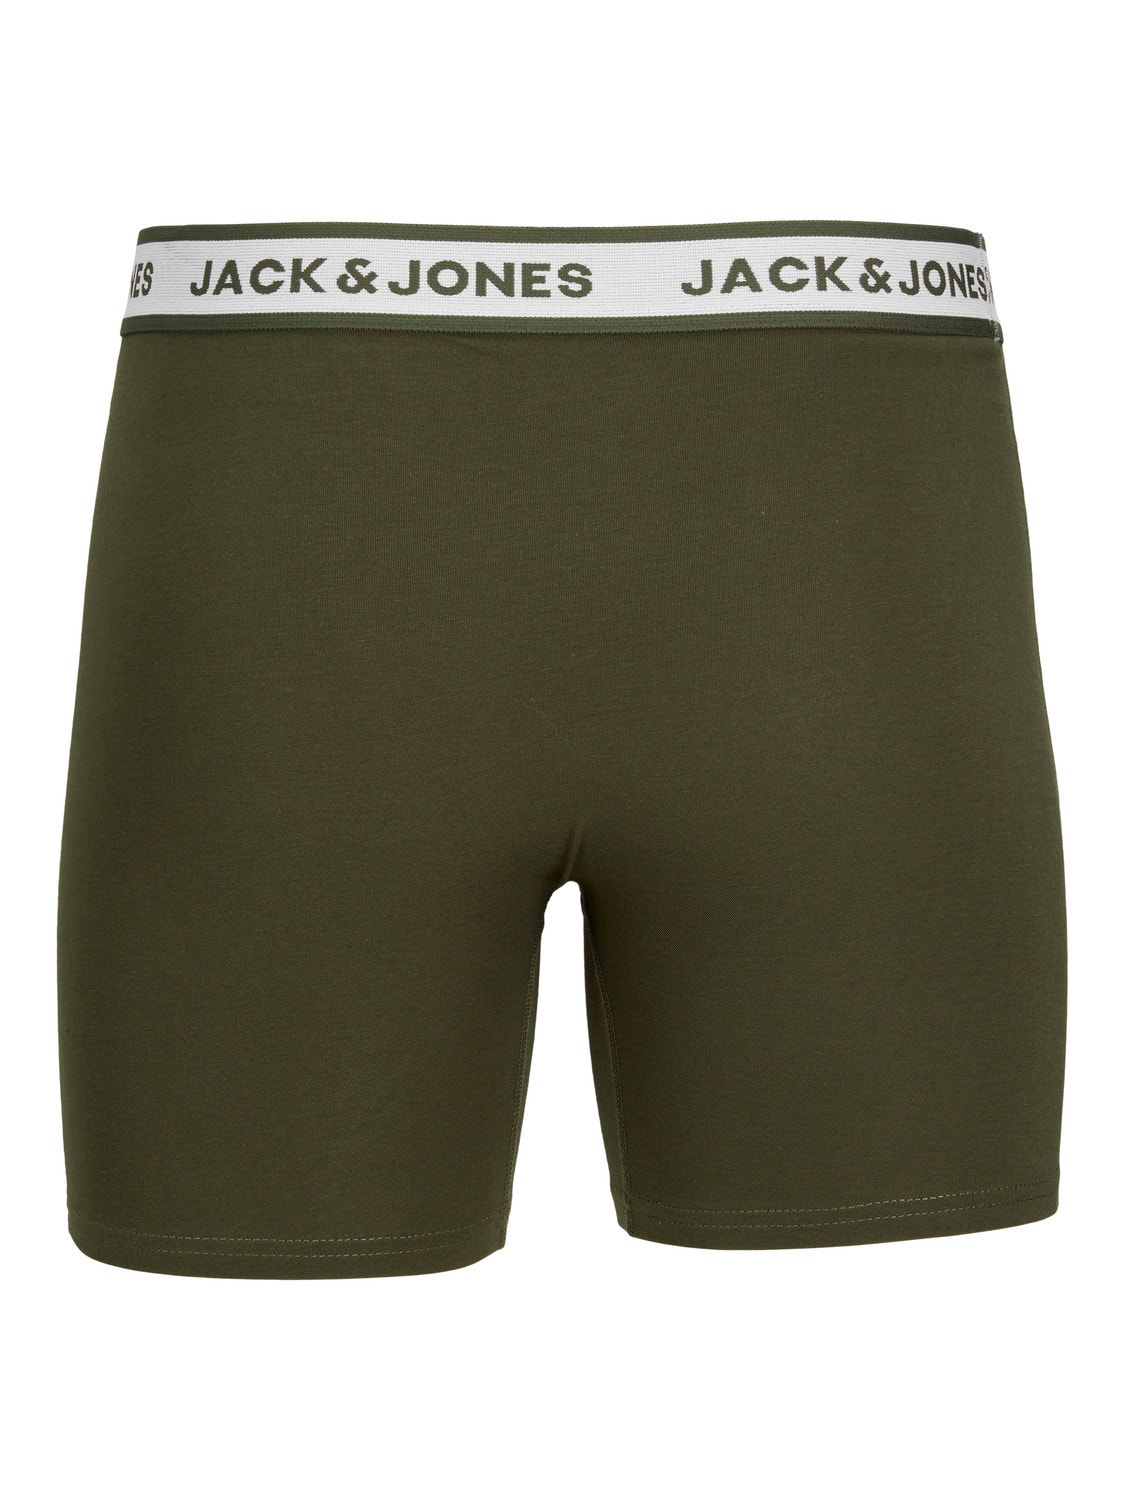 Jack & Jones 5er-pack Boxer briefs -Light Grey Melange - 12229569